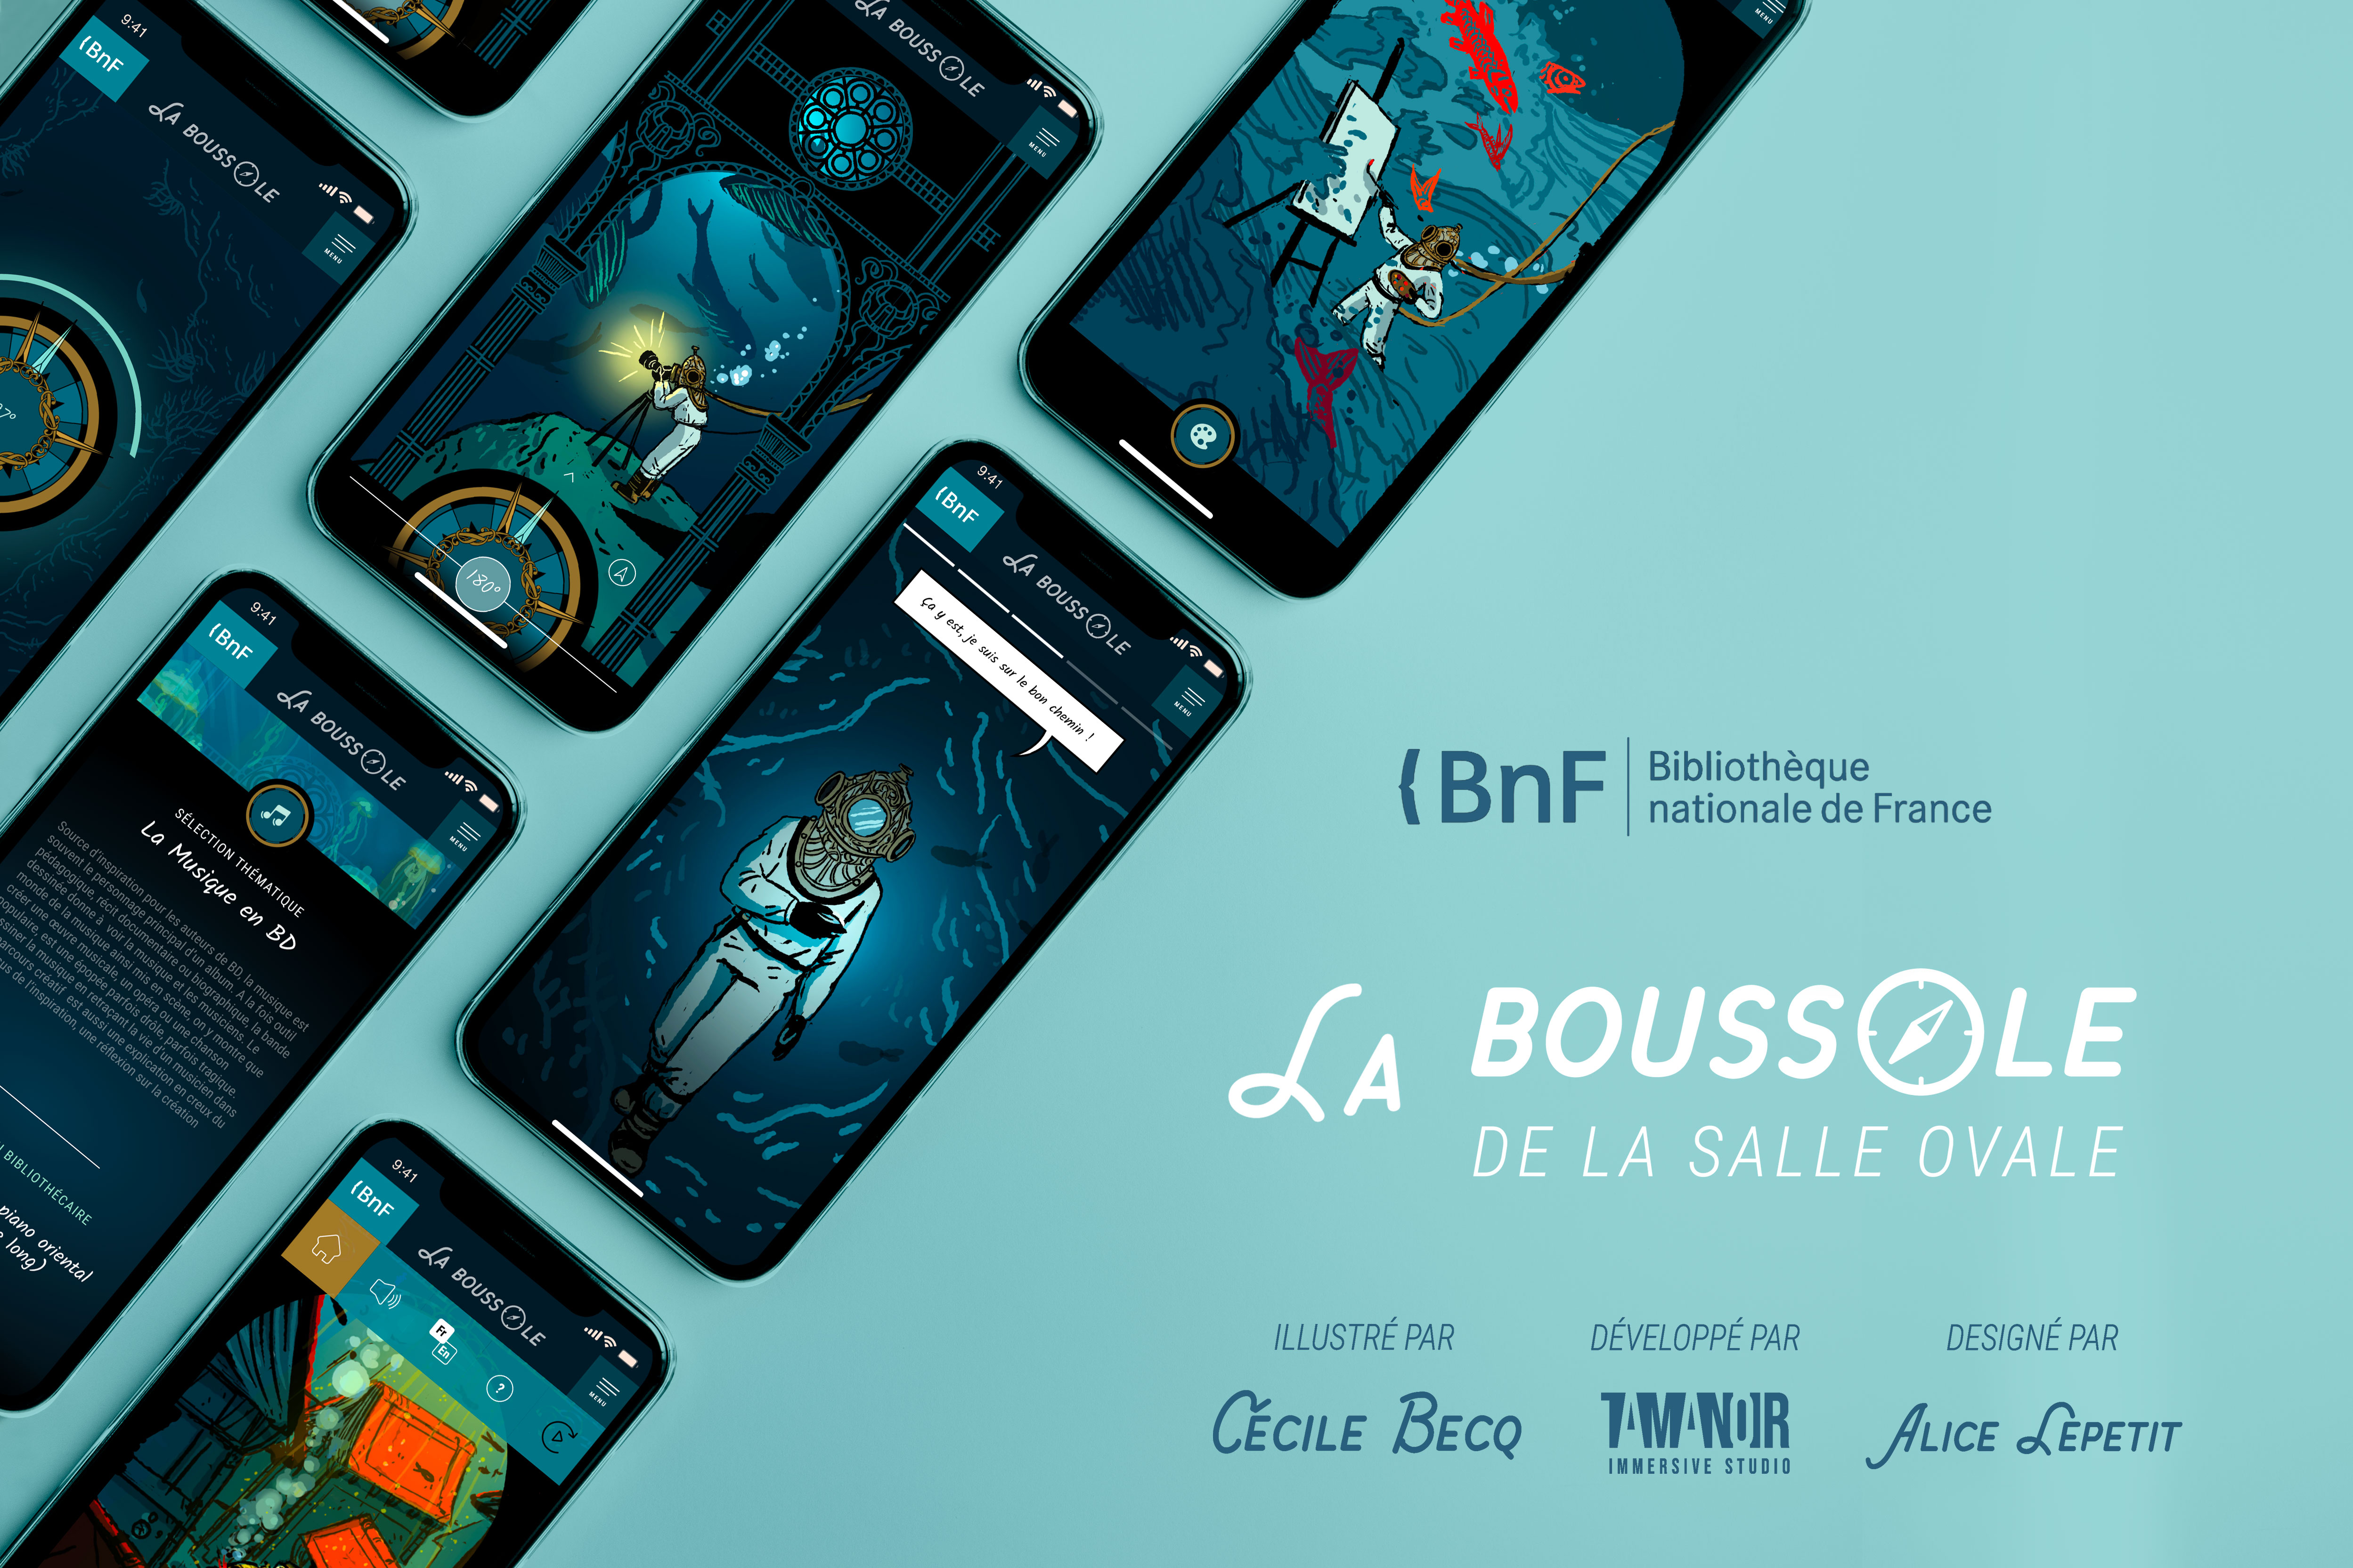 Site "La Boussole" - BNF